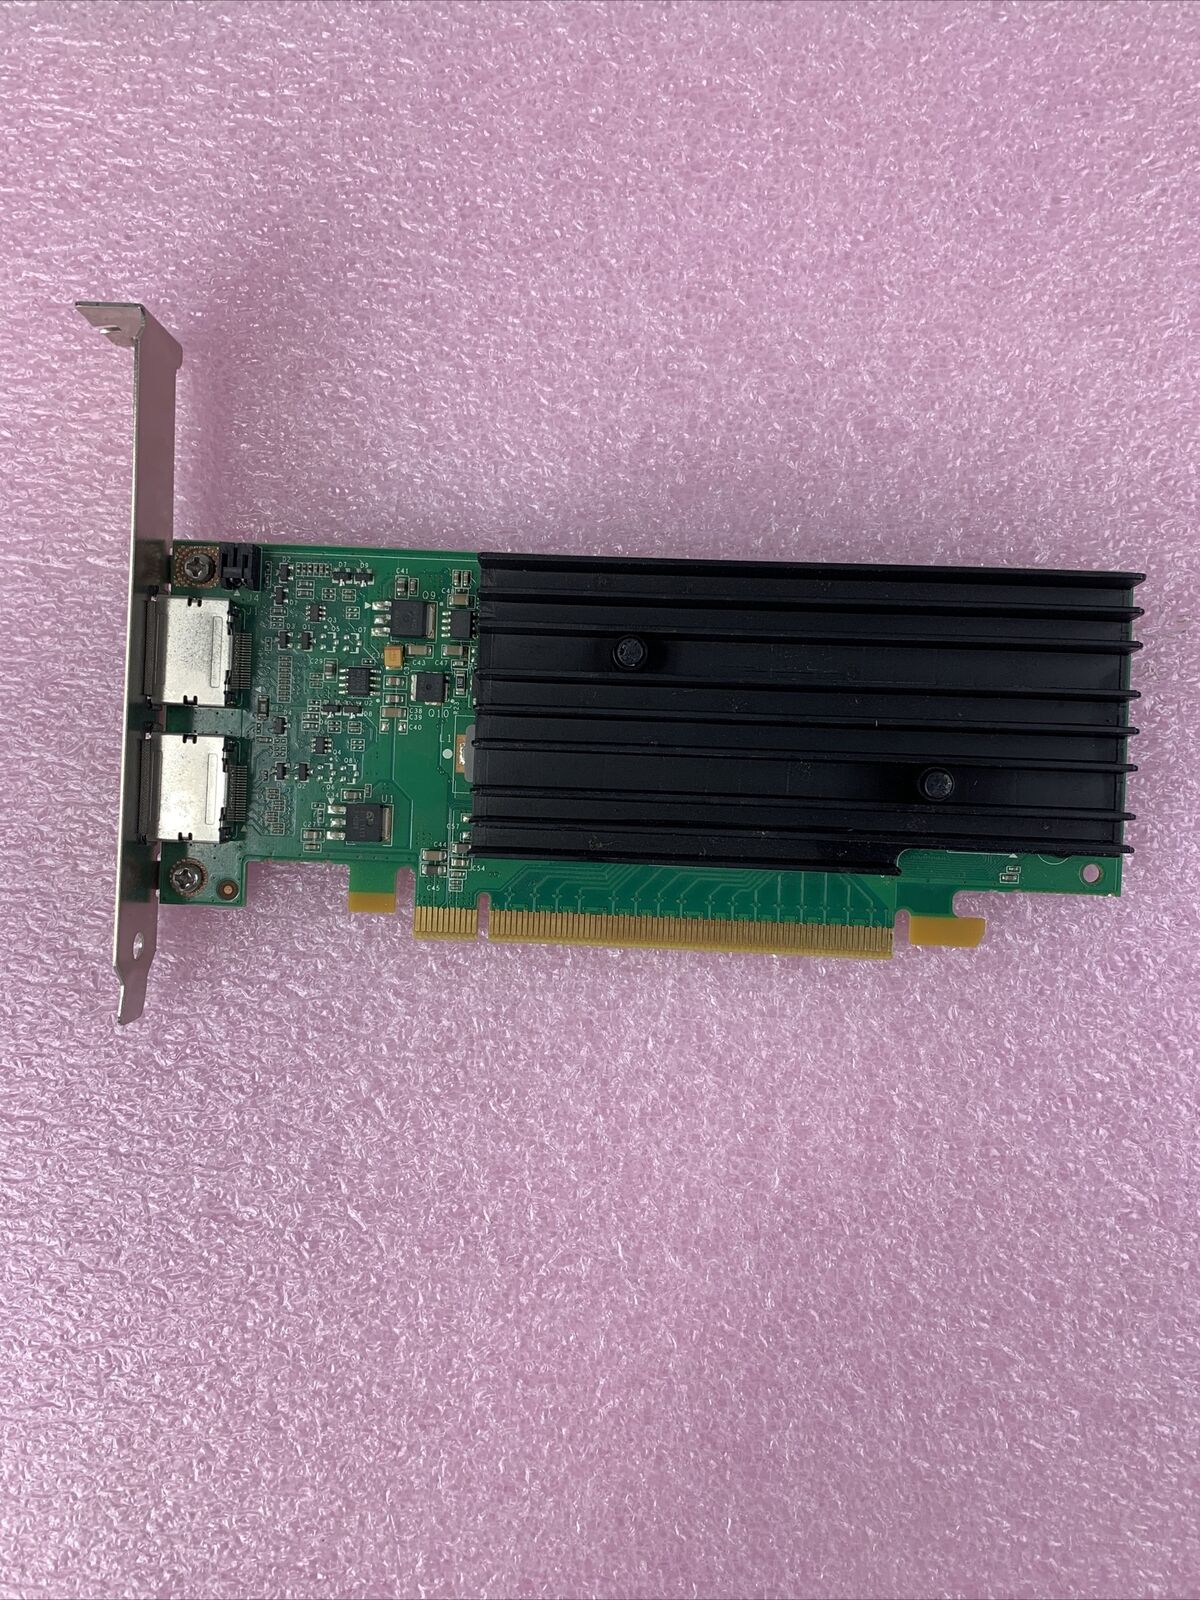 NVIDIA Quadro NVS 295 PNY 256 MB GDDR3 PCIe x16 Dual DP Graphics Video Card